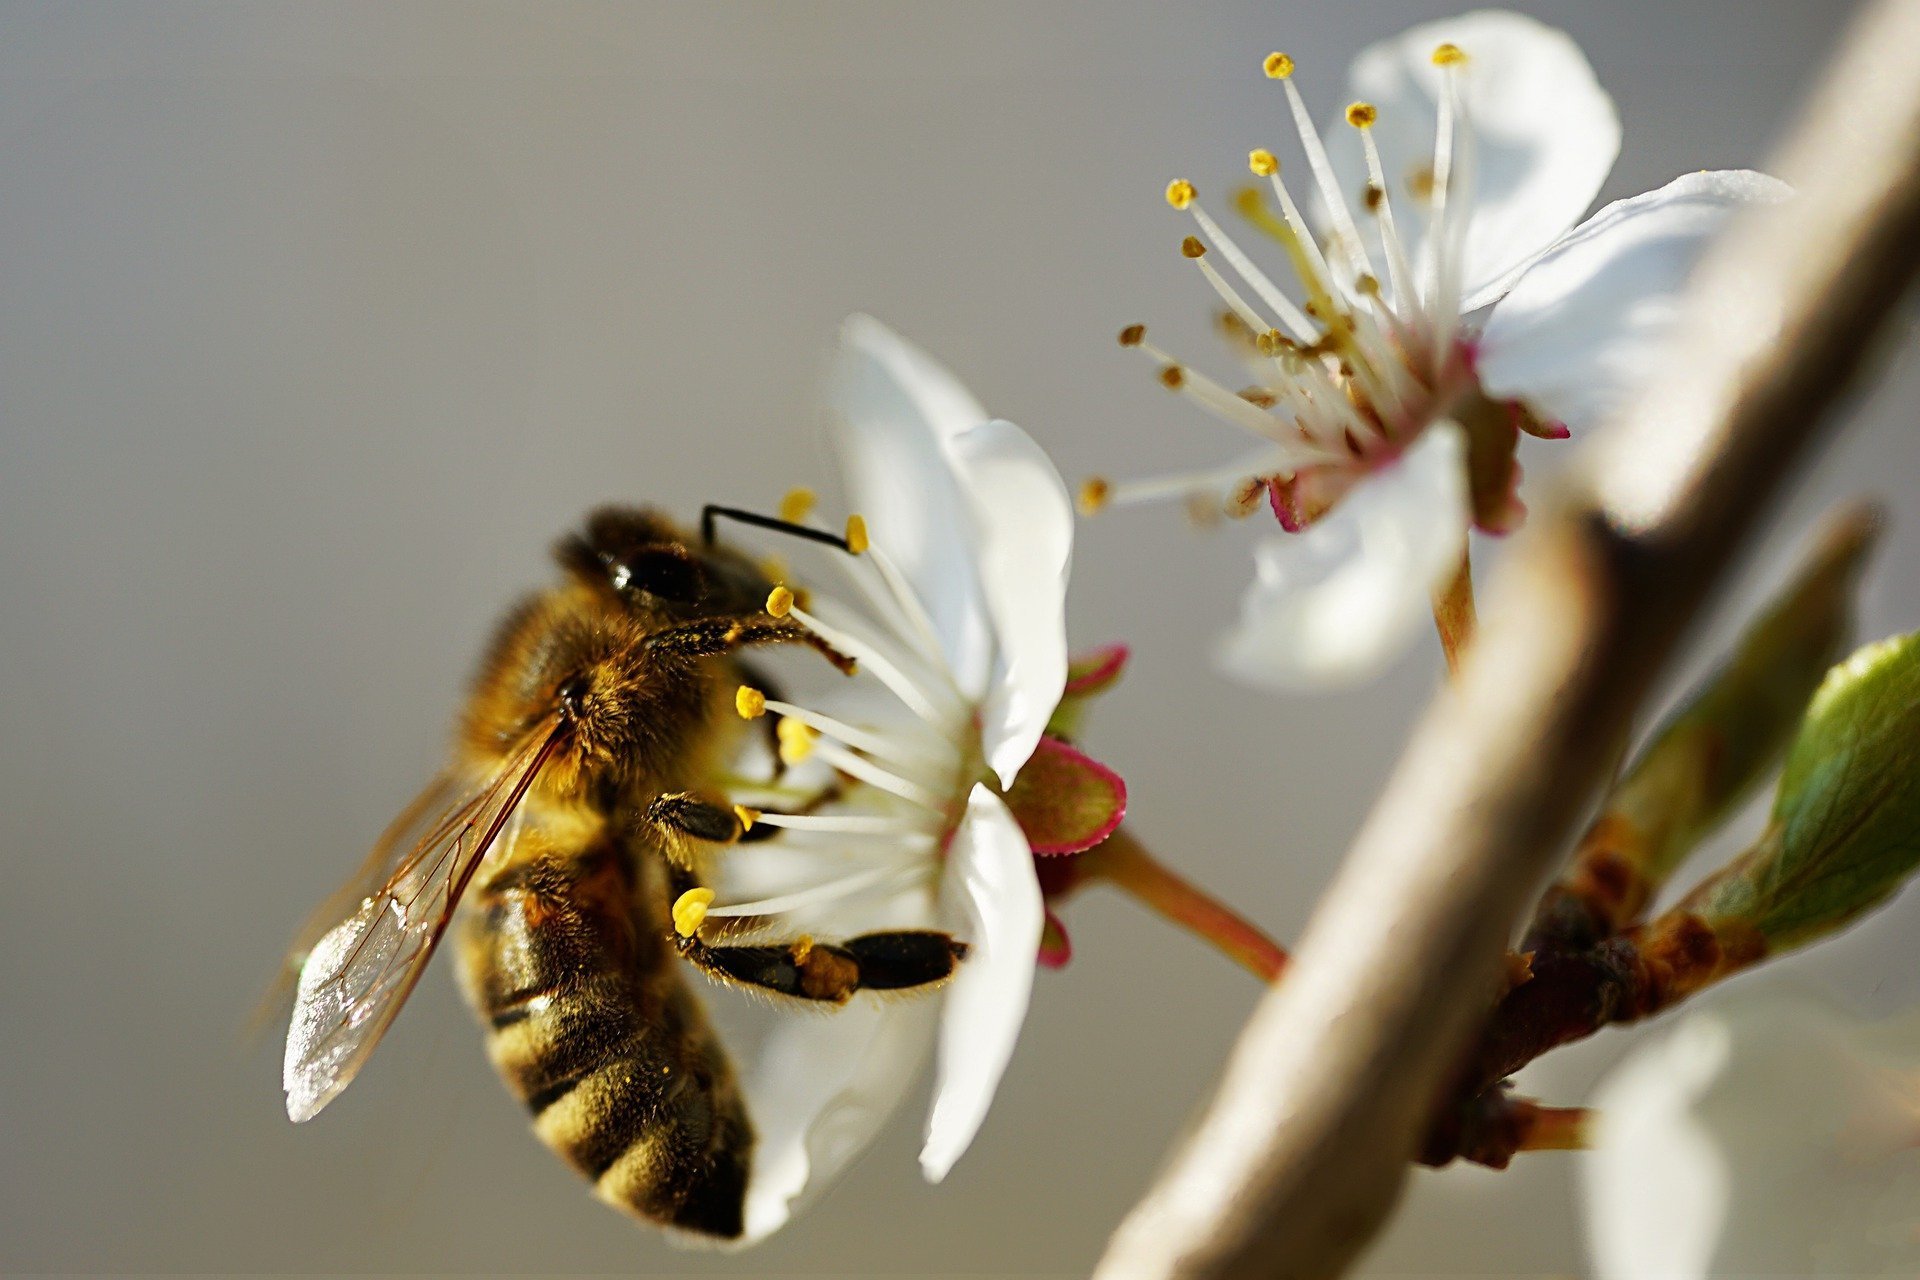  Bitės. Pixabay nuotr.